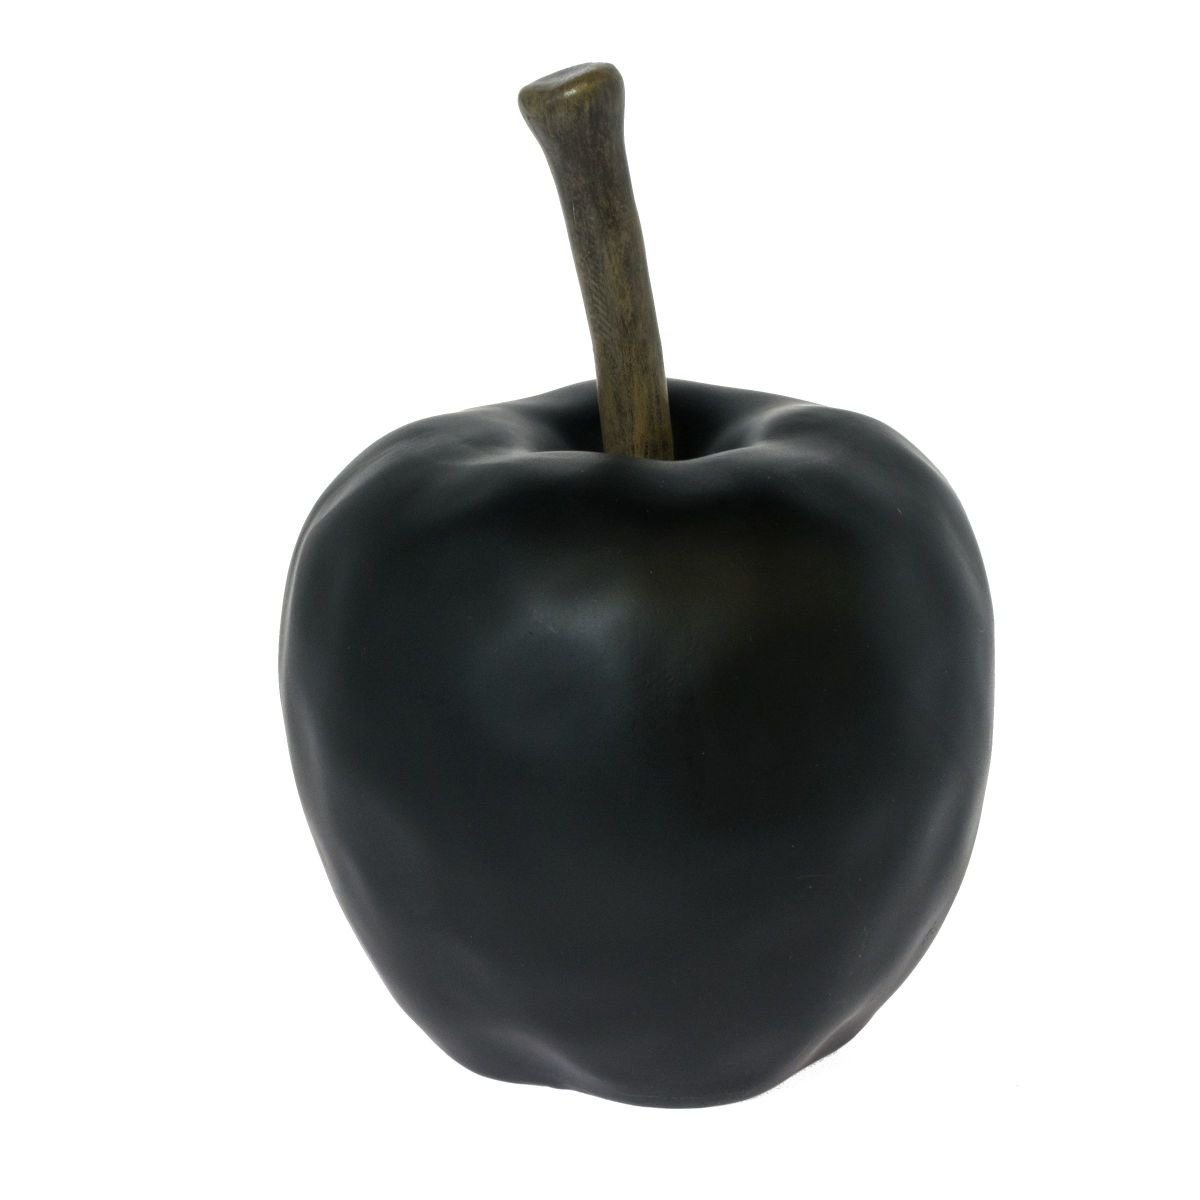 Modernes Deko-Objekt in Form eines schwarzen Apfels. In mattem schwarz, Maße: ca. 26 cm hoch, 17 cm Ø, Gewicht: ca. 1,4 kg, Material: Polyresin.<br>